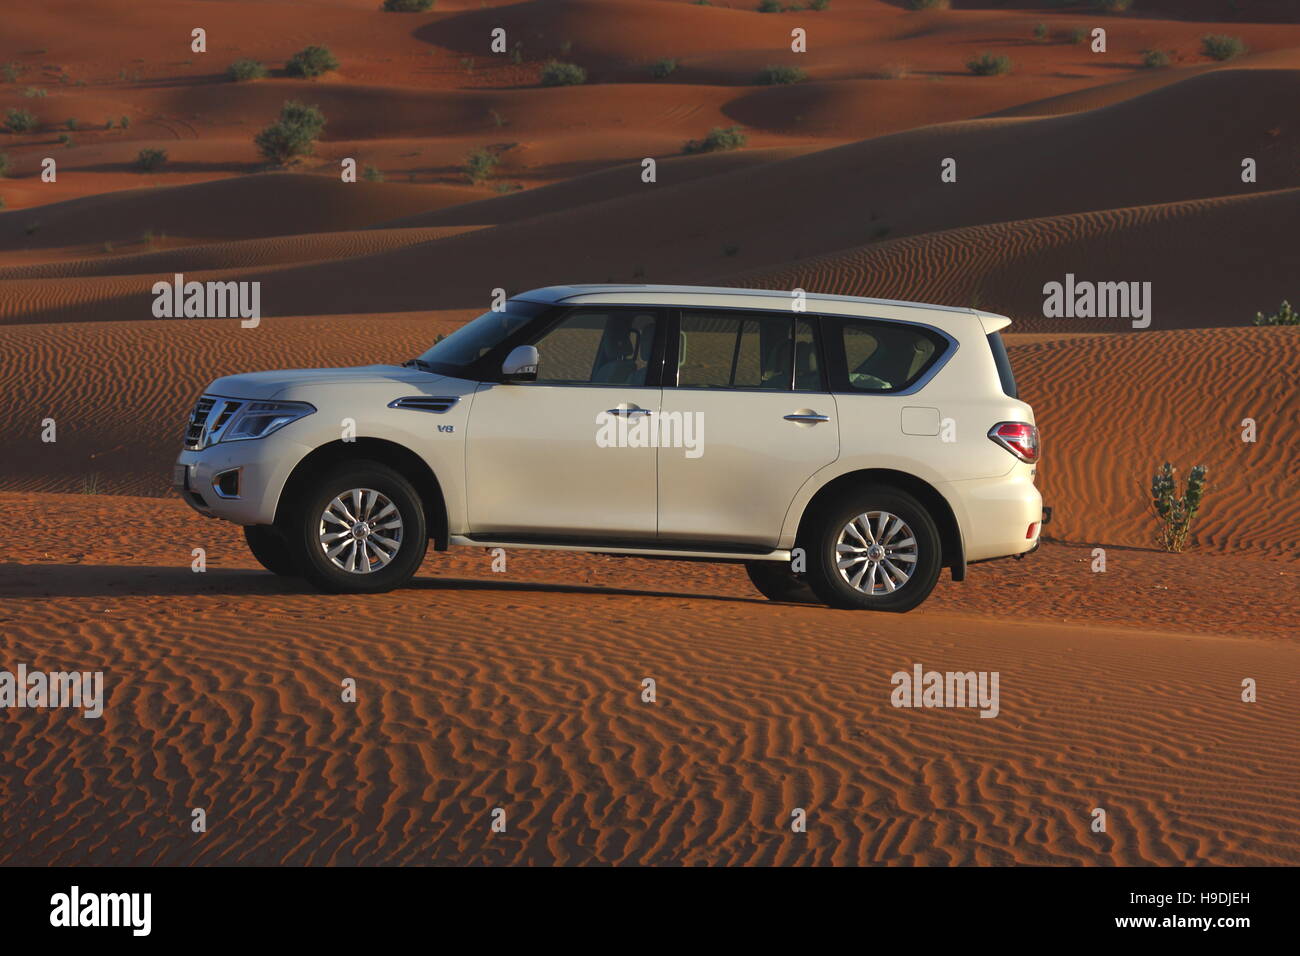 Nissan Patrol in der Wüste Abu Dhabi Emirate, Vereinigte Arabische Emirate Stockfoto